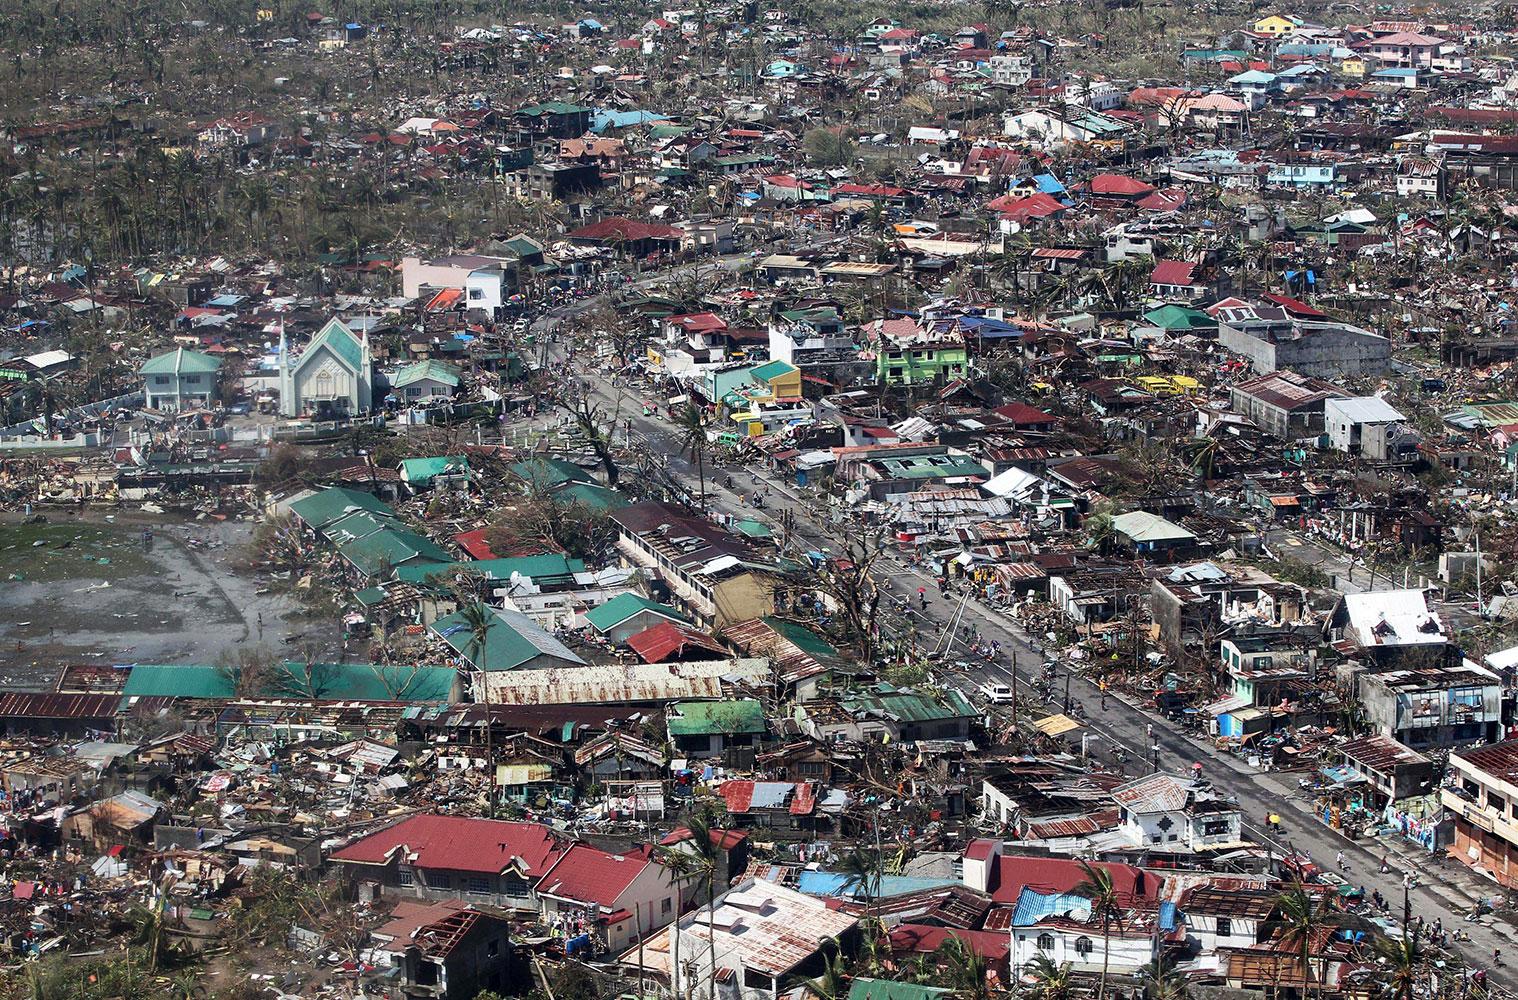 95 procent av Tacloban har förstört och 10 000 har dött enligt uppgifter.